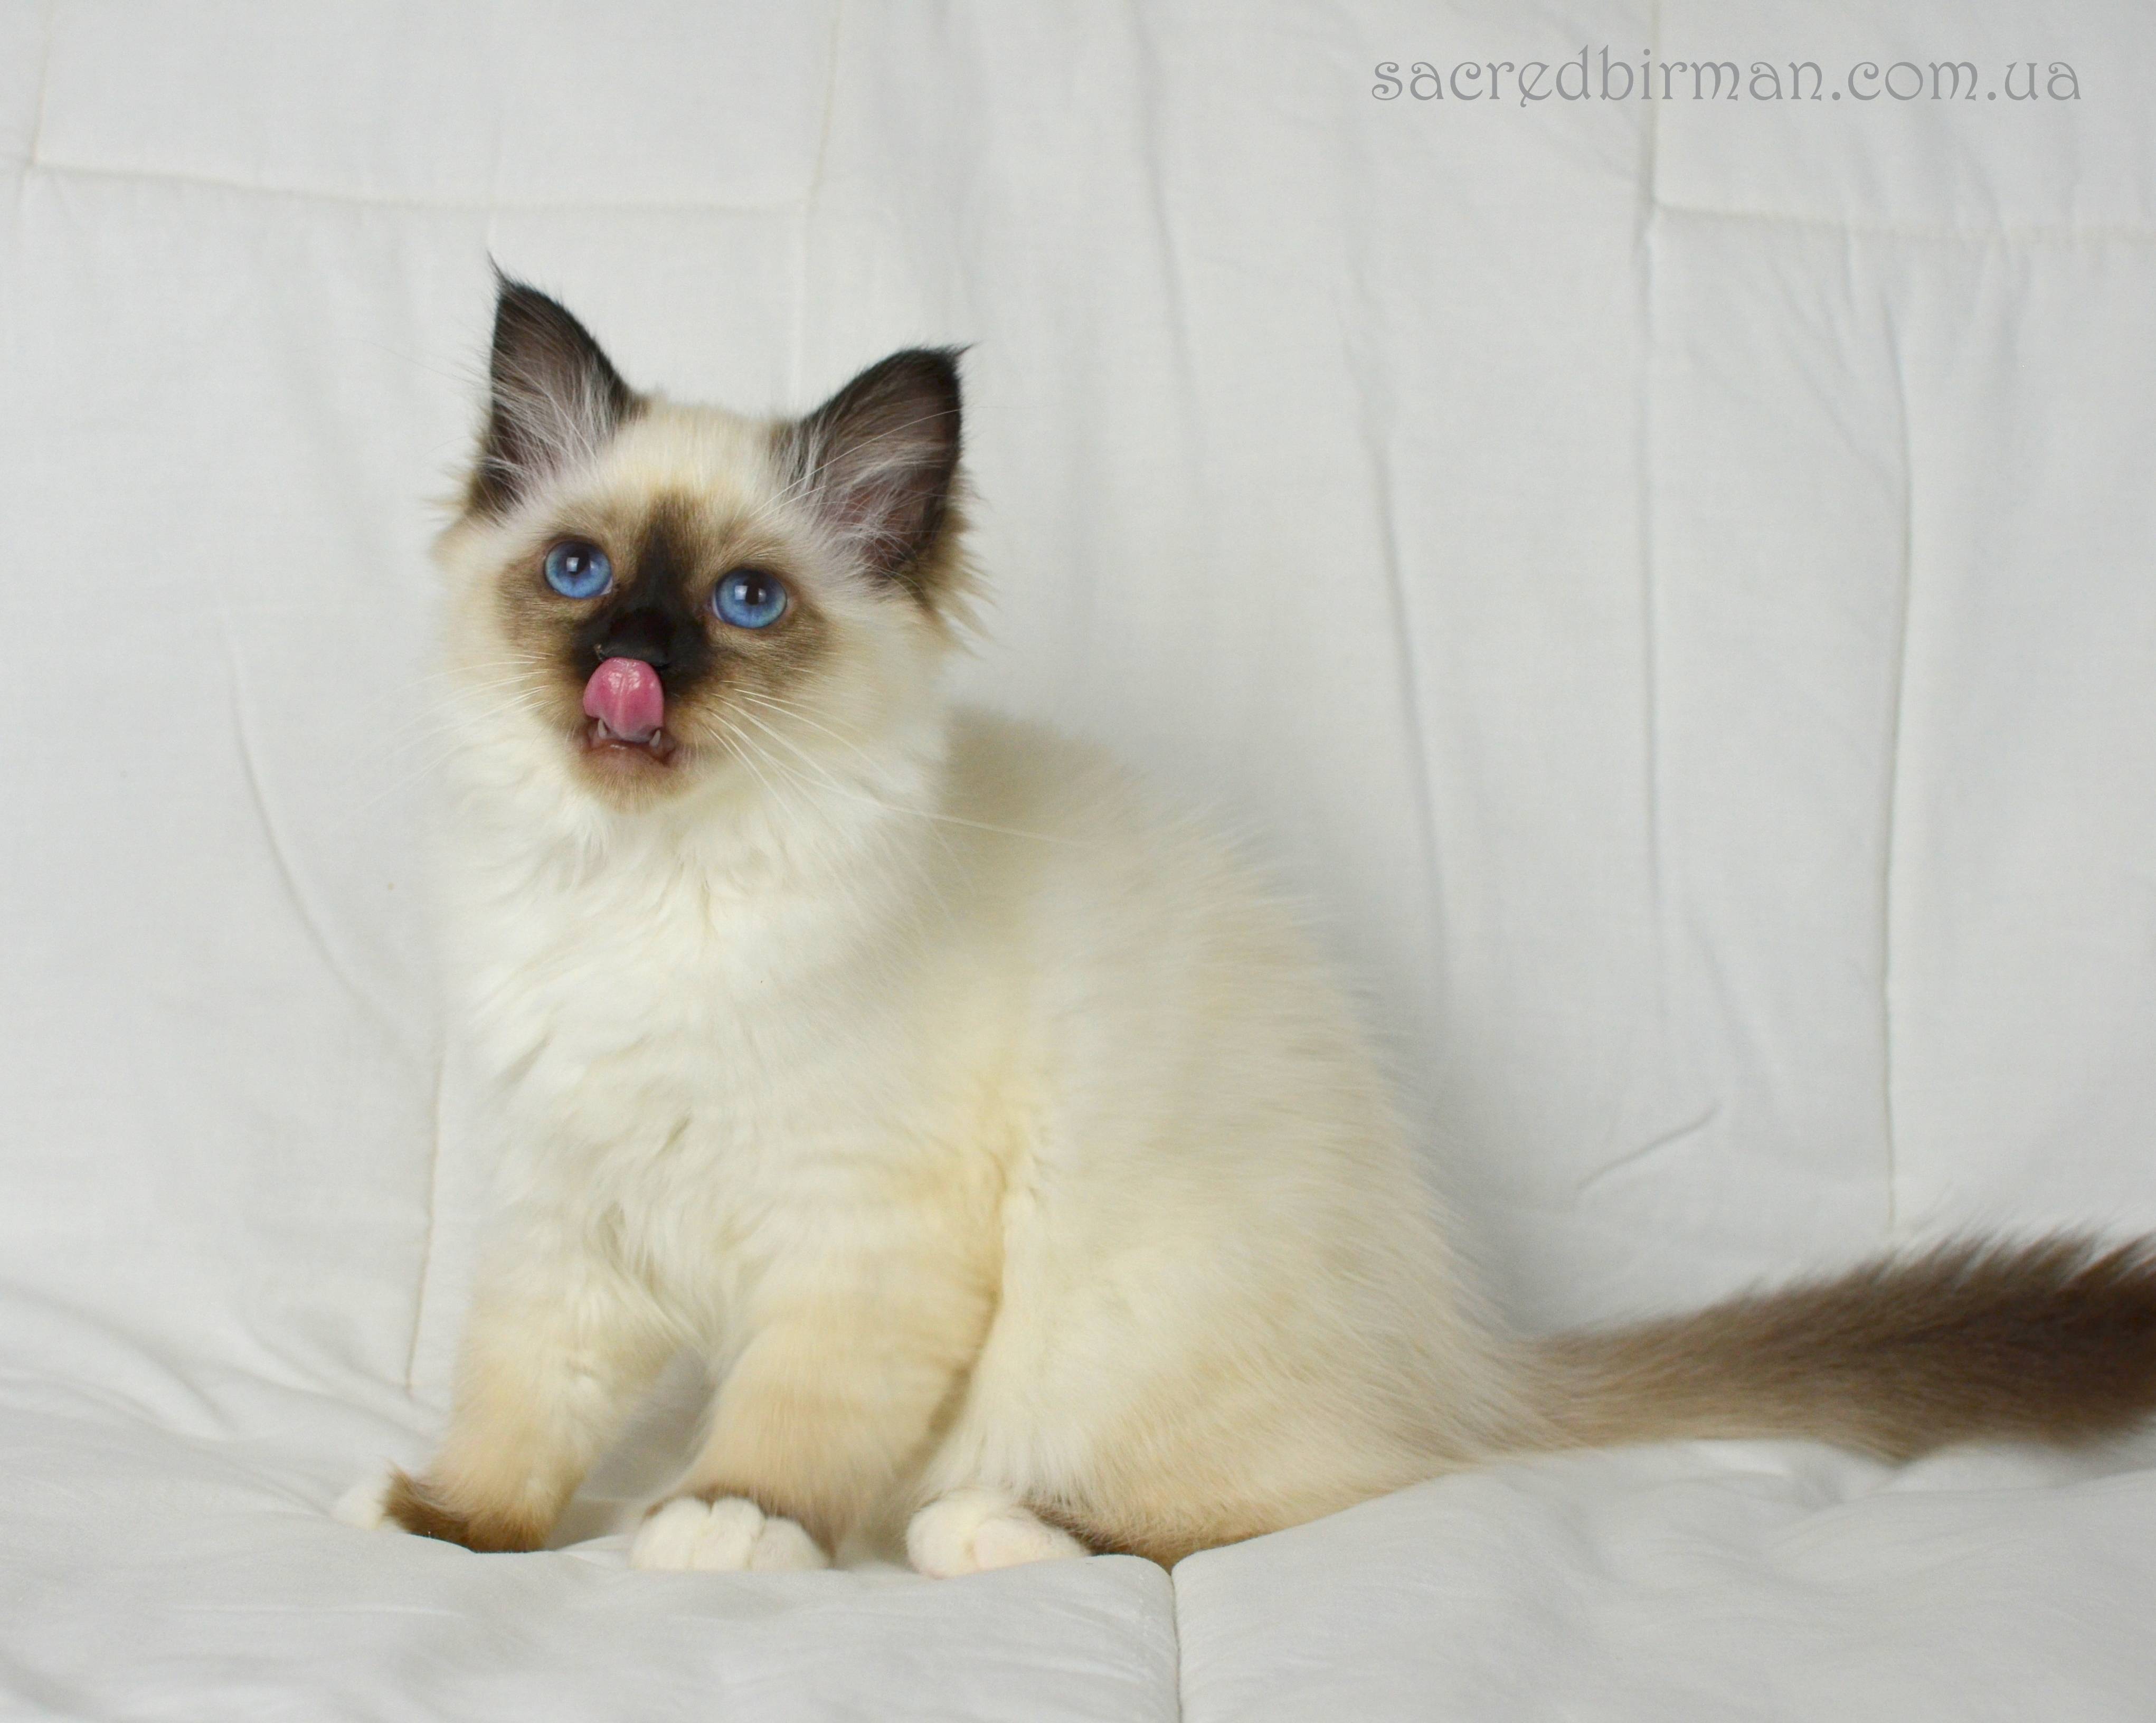 Бирманская кошка (бирма) - фото, цена котенка, описание характера и стандарта